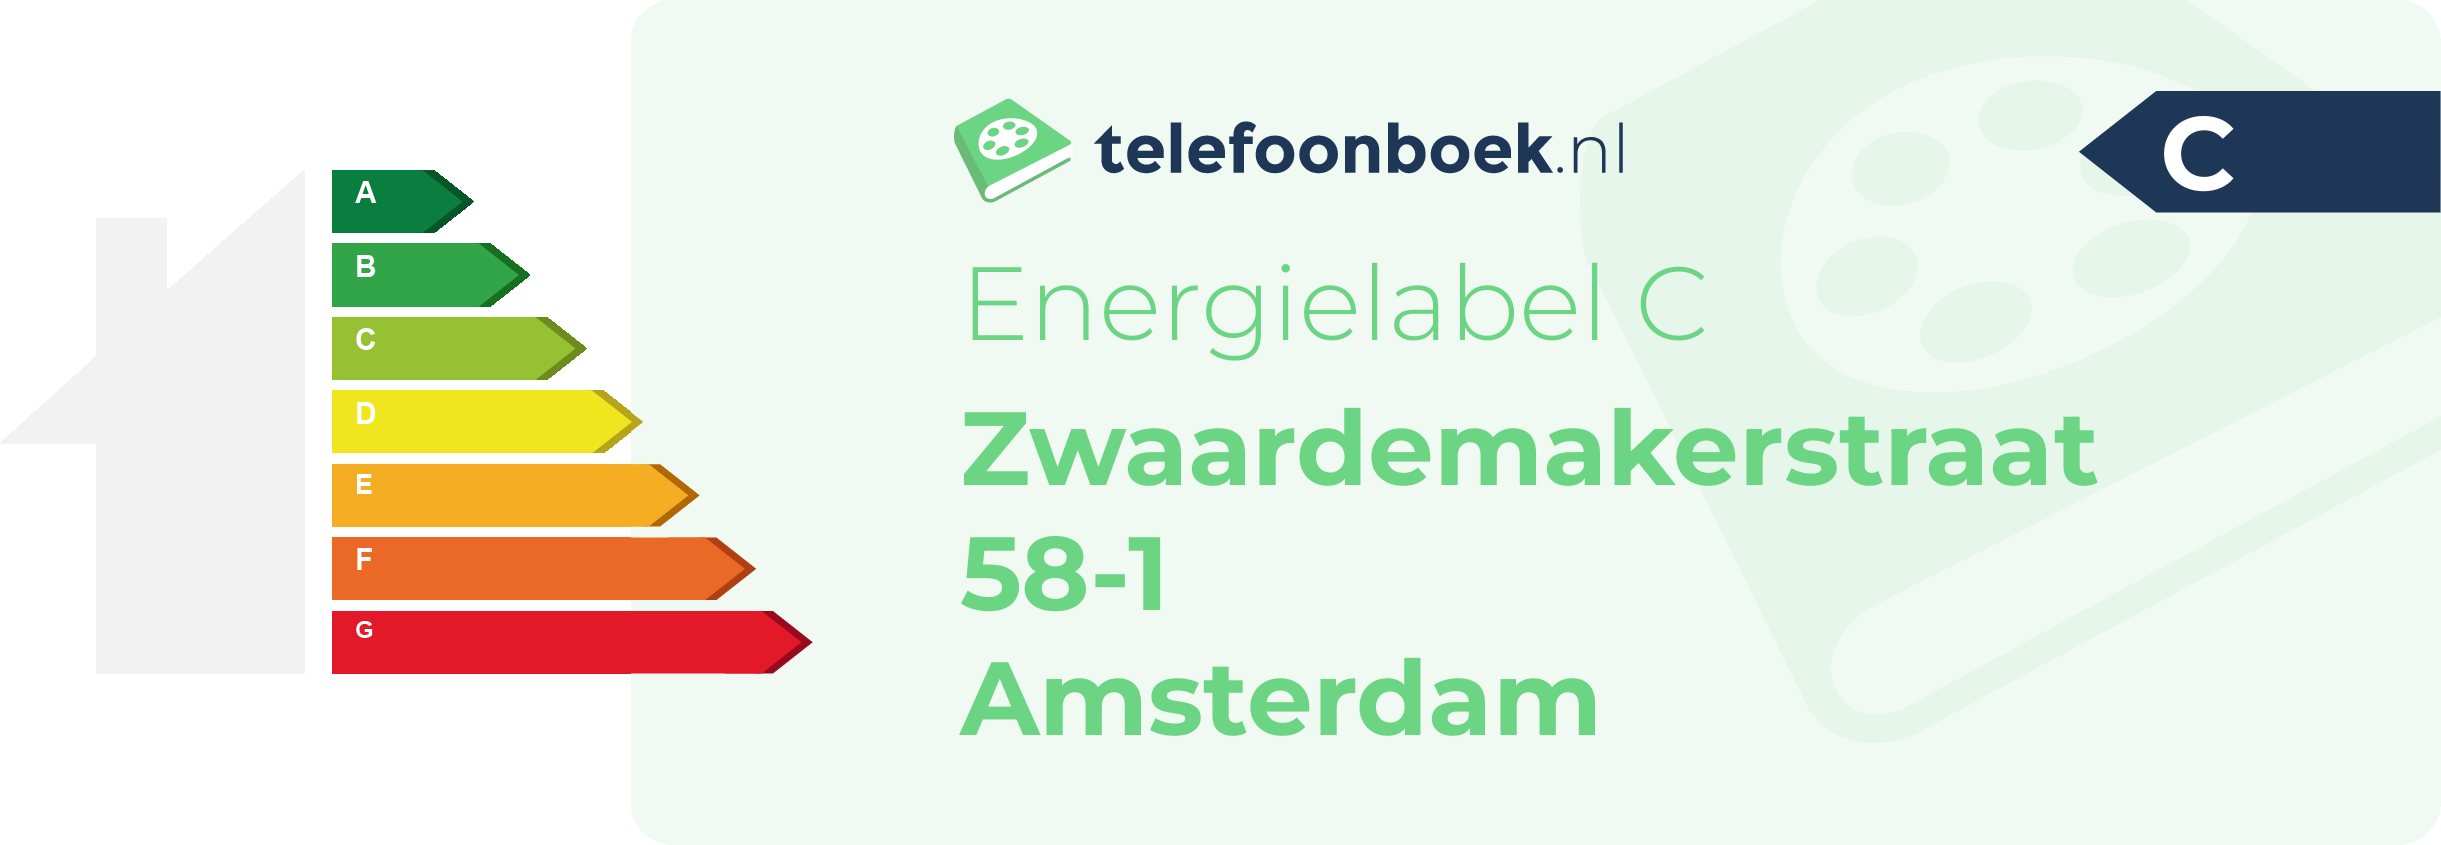 Energielabel Zwaardemakerstraat 58-1 Amsterdam